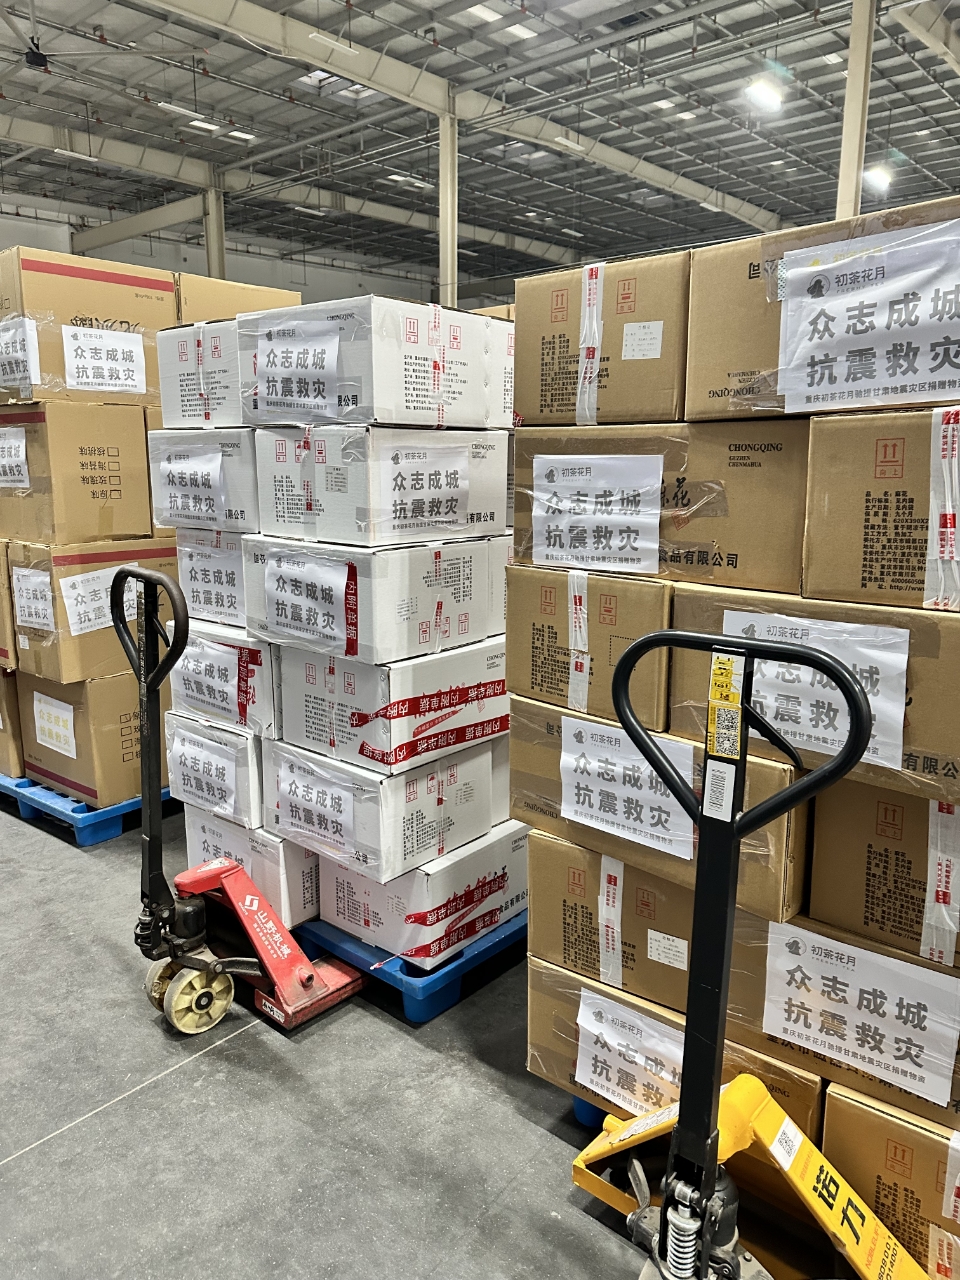 重庆初茶花月食品科技有限公司捐赠的救灾物资即将送往灾区。重庆市红十字会供图